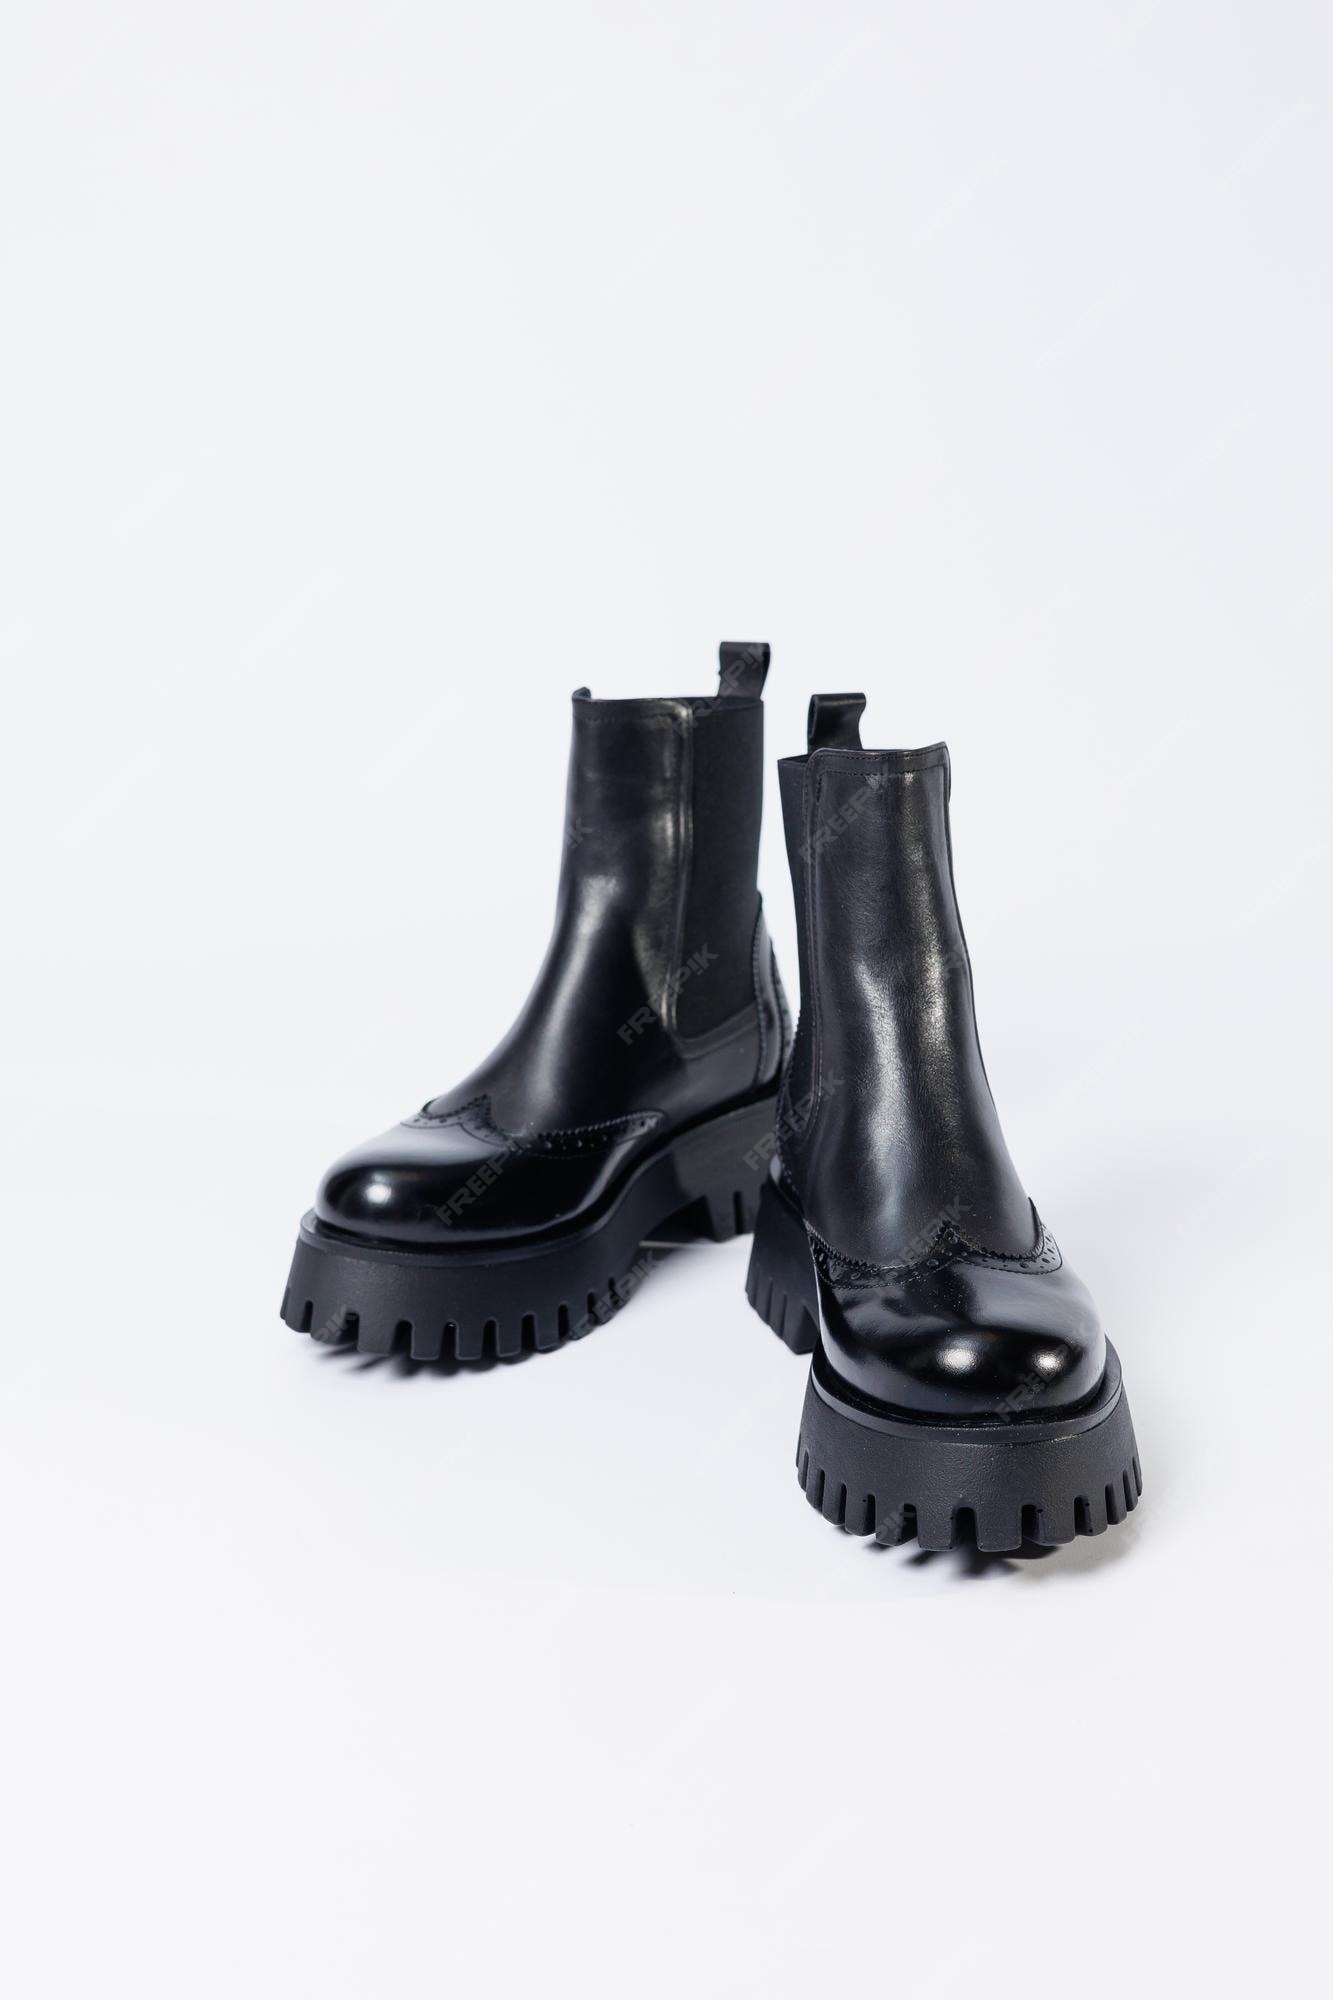 Botas negras de mujer con cuero genuino en suela rugosa sin cordones. nueva colección de zapatos de primavera mujer | Foto Premium